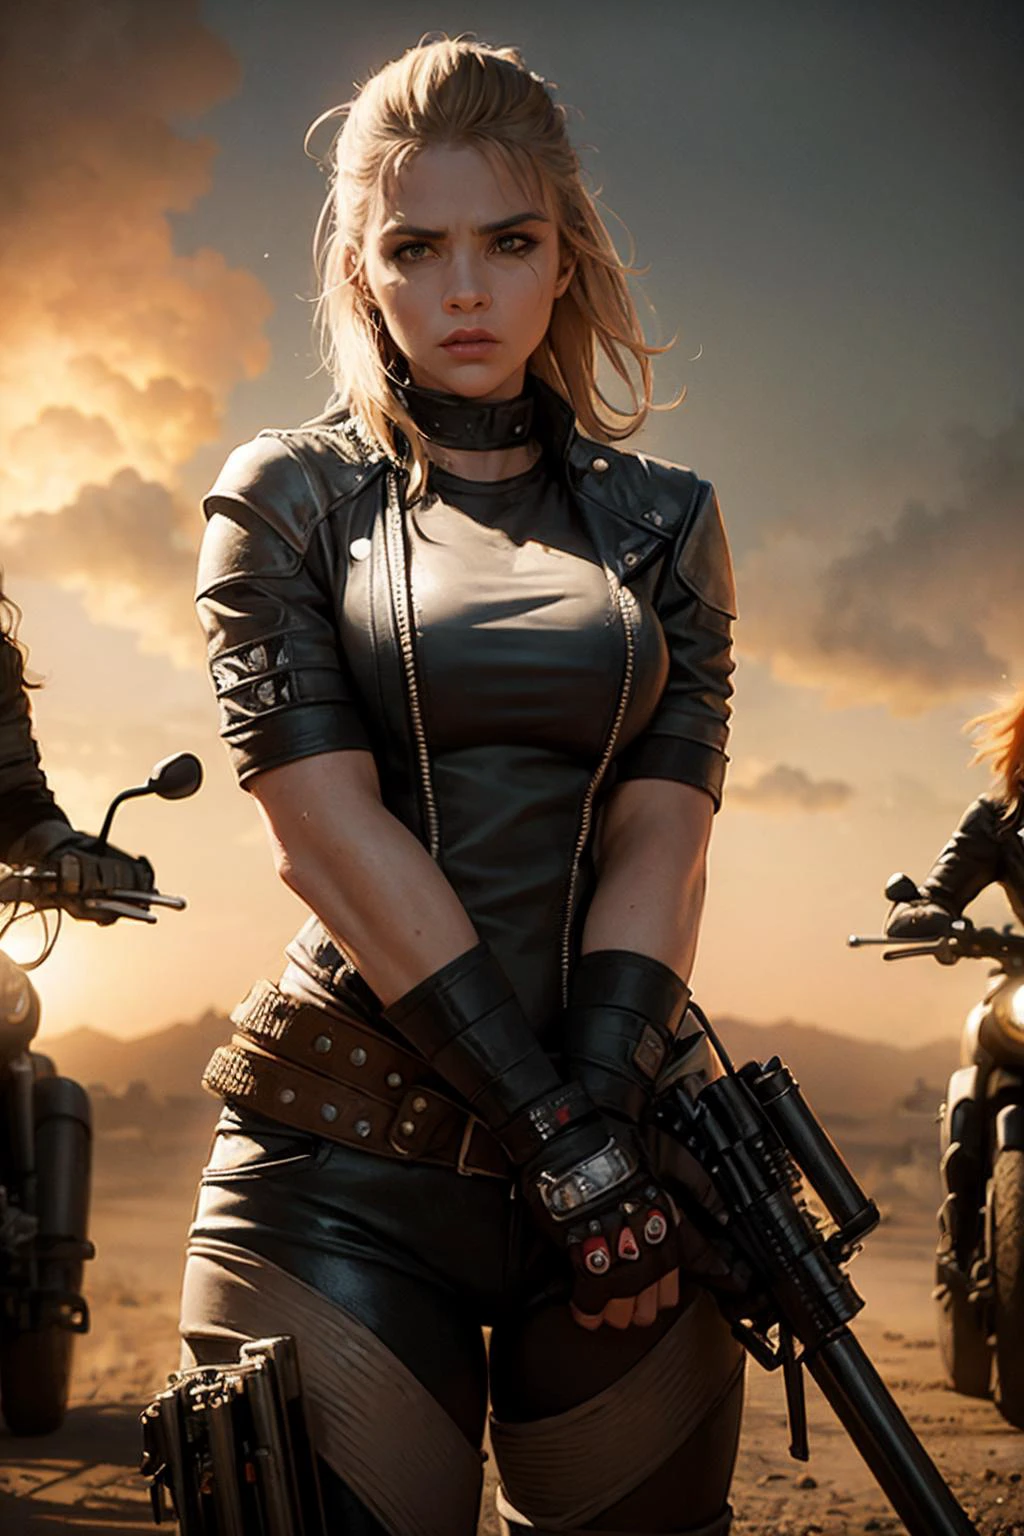 gangue de motociclistas femininas. Armado e perigoso. estilo de arte mad max. iluminação cinematográfica.